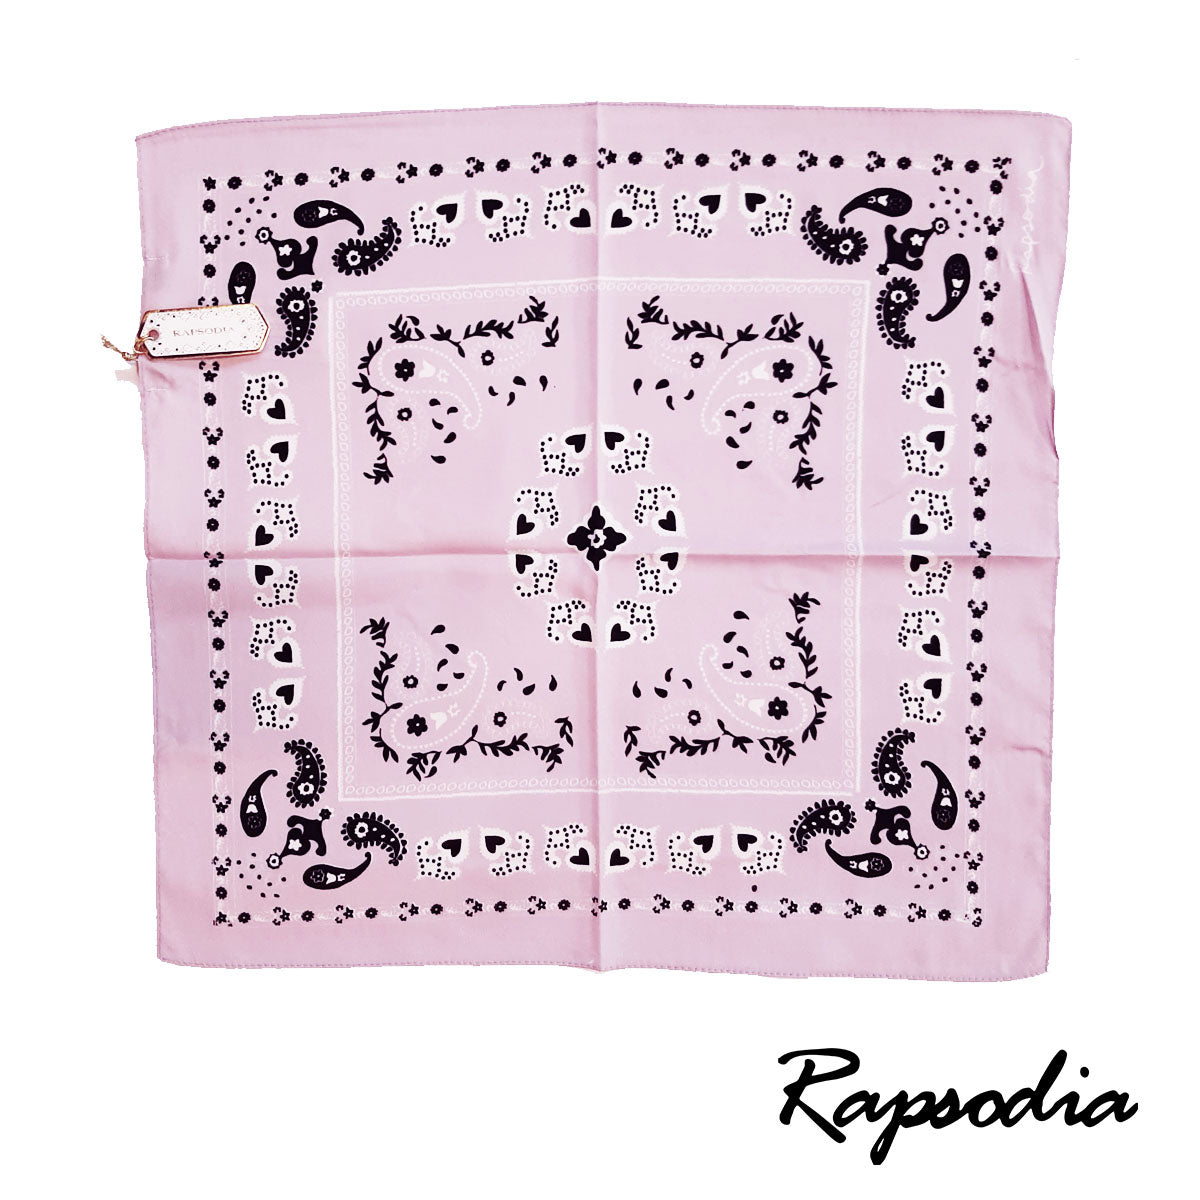 Pañuelo Rapsodia Summer Rosa